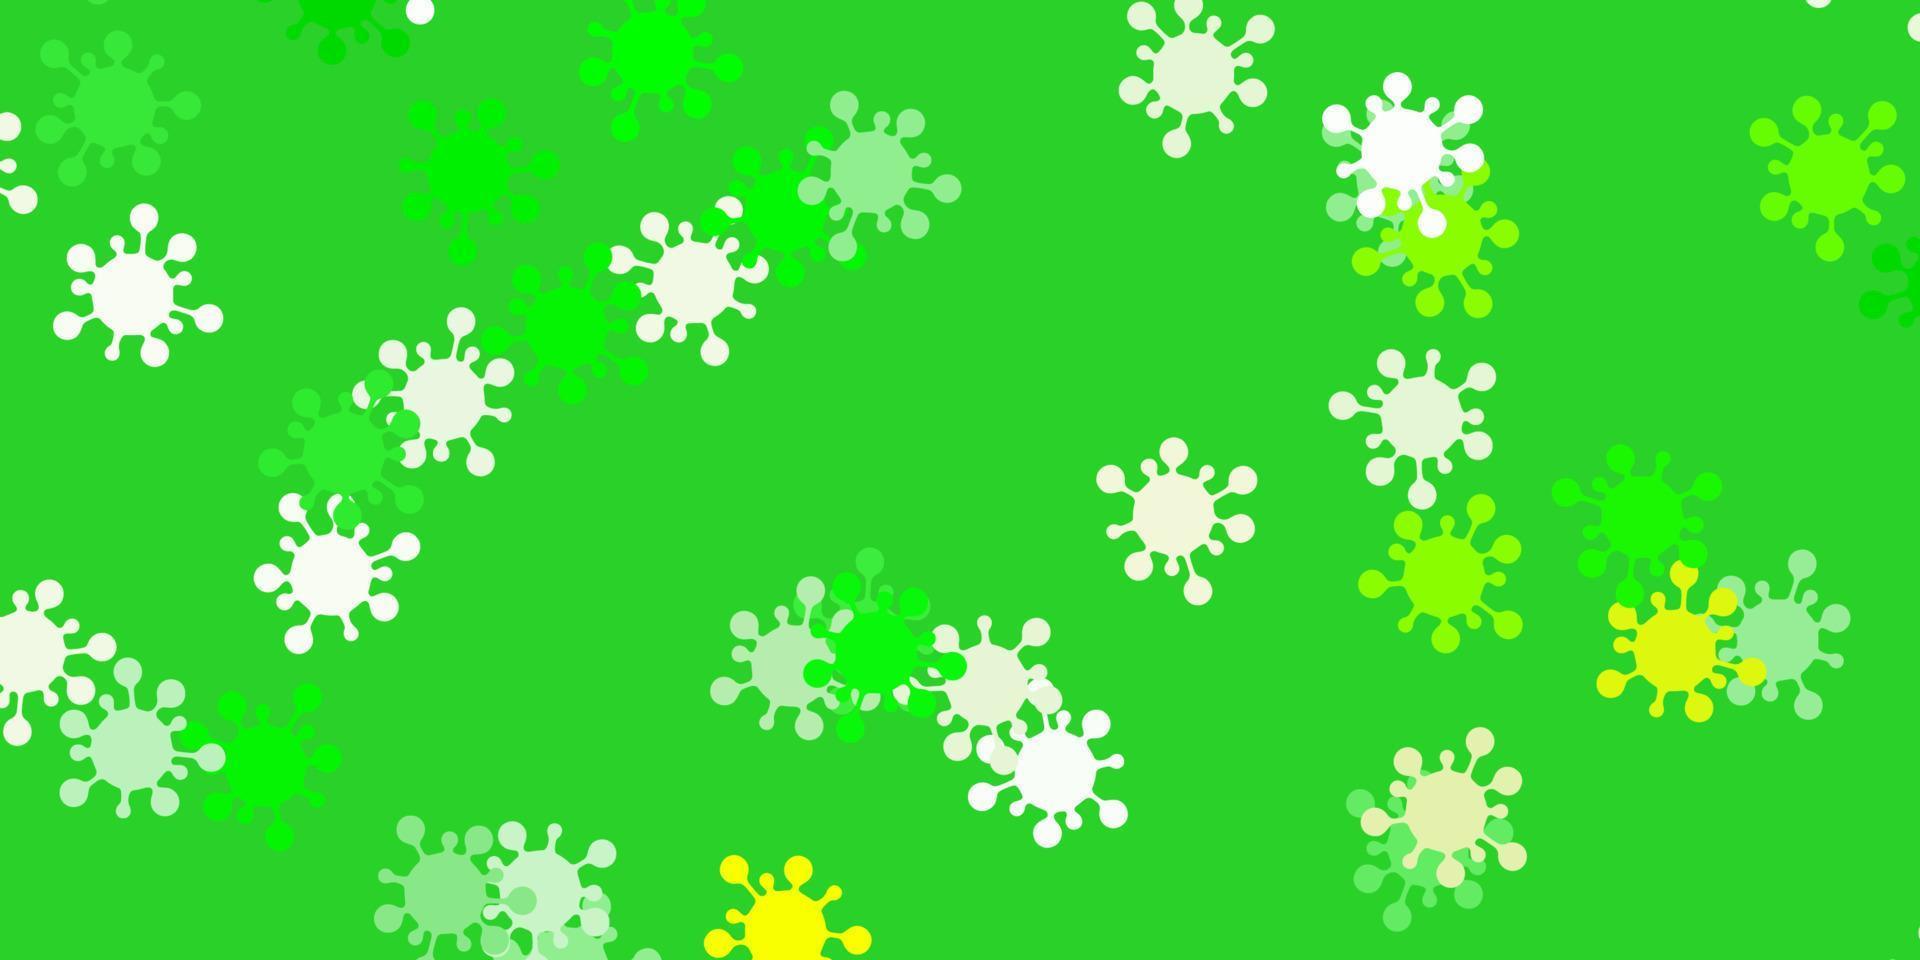 modello vettoriale verde chiaro, giallo con segni di influenza.